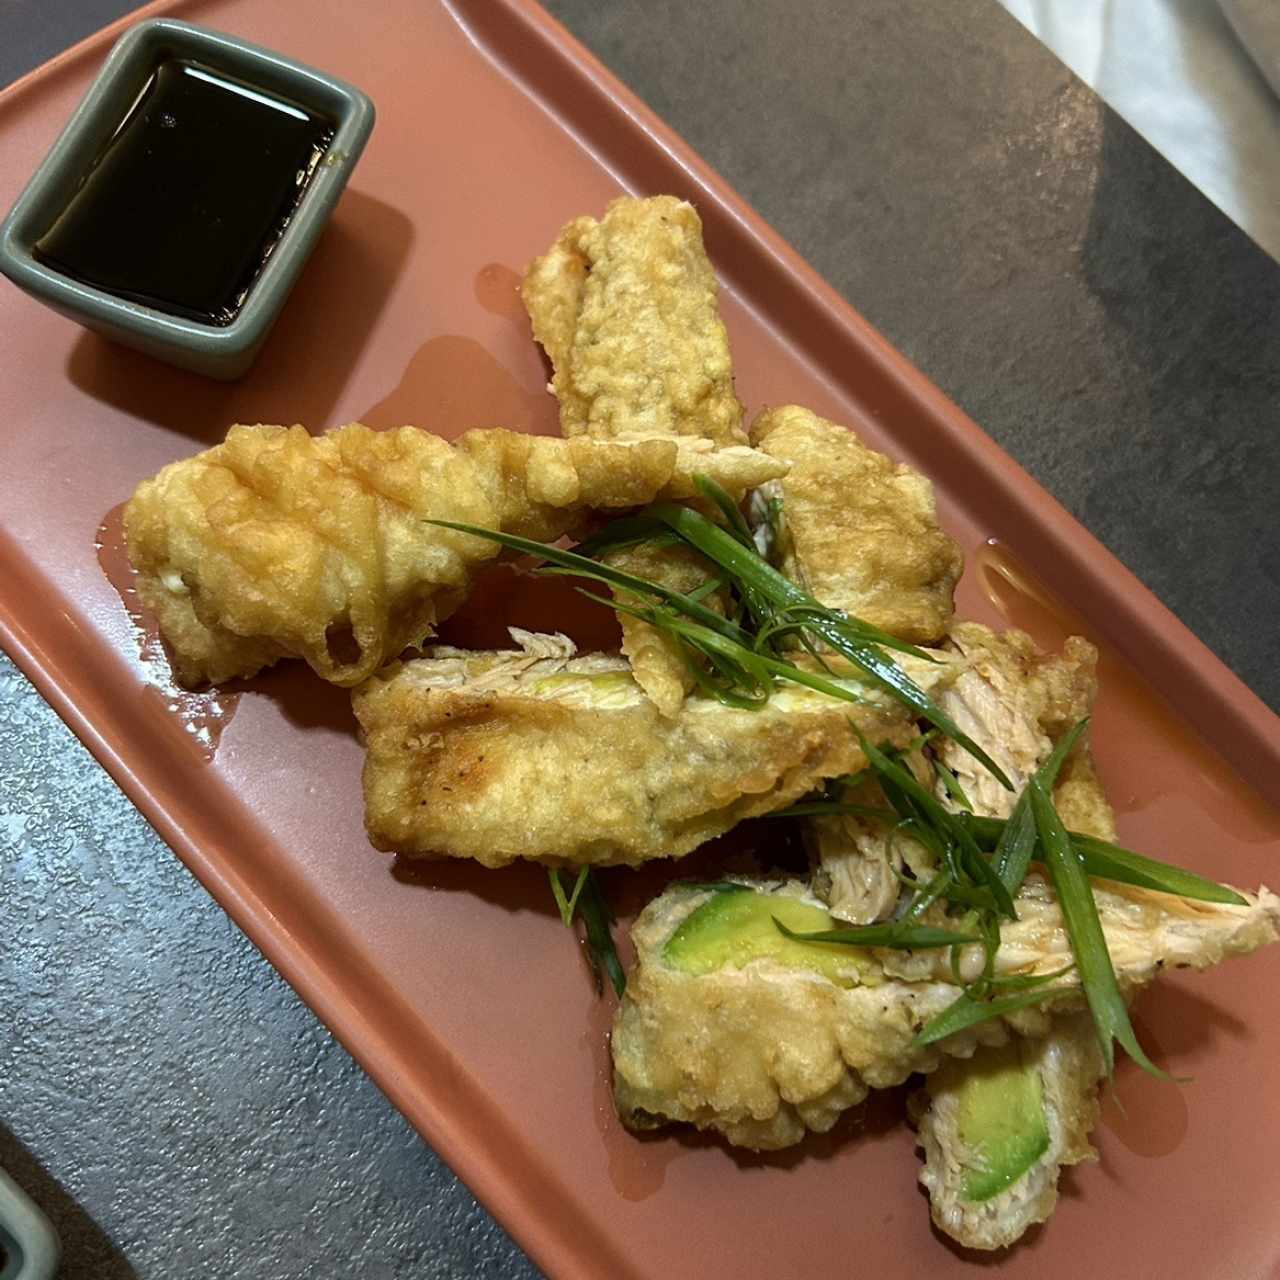 Tempura - Alaska tempura